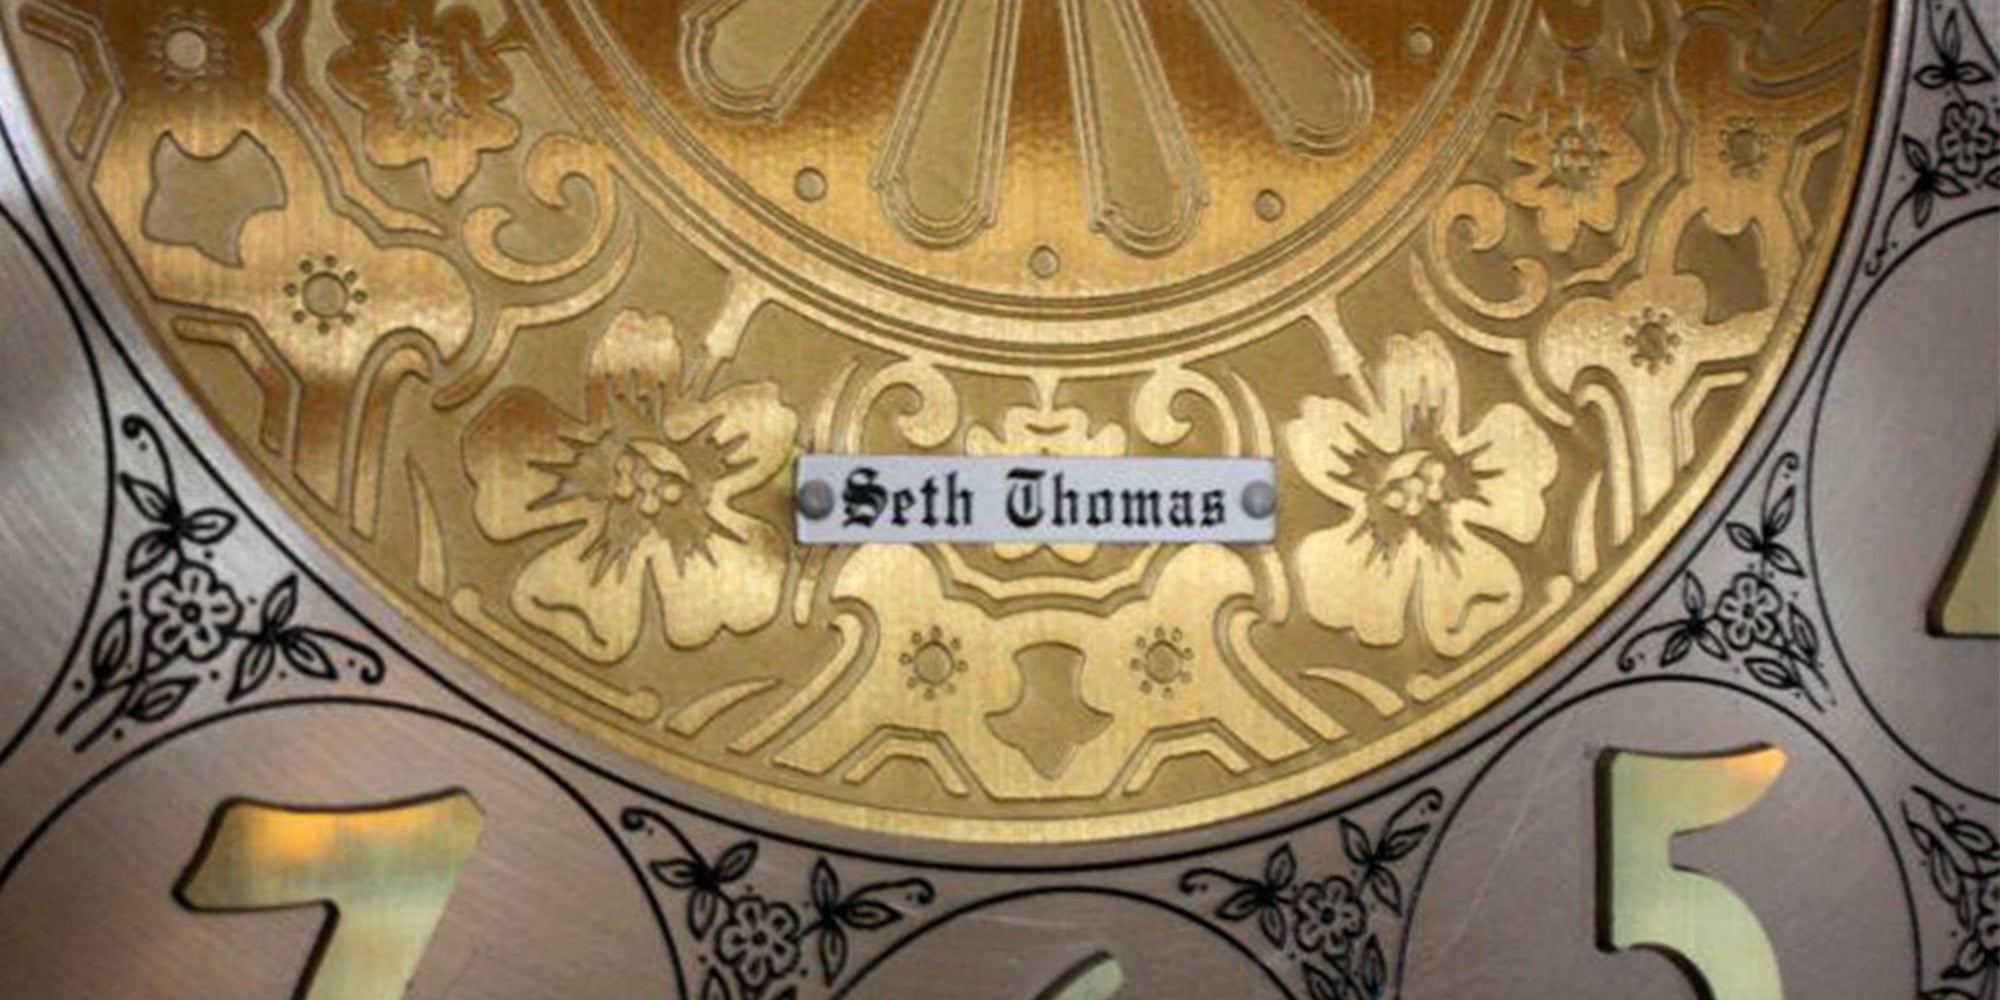 Seth Thomas Grandfather Clocks